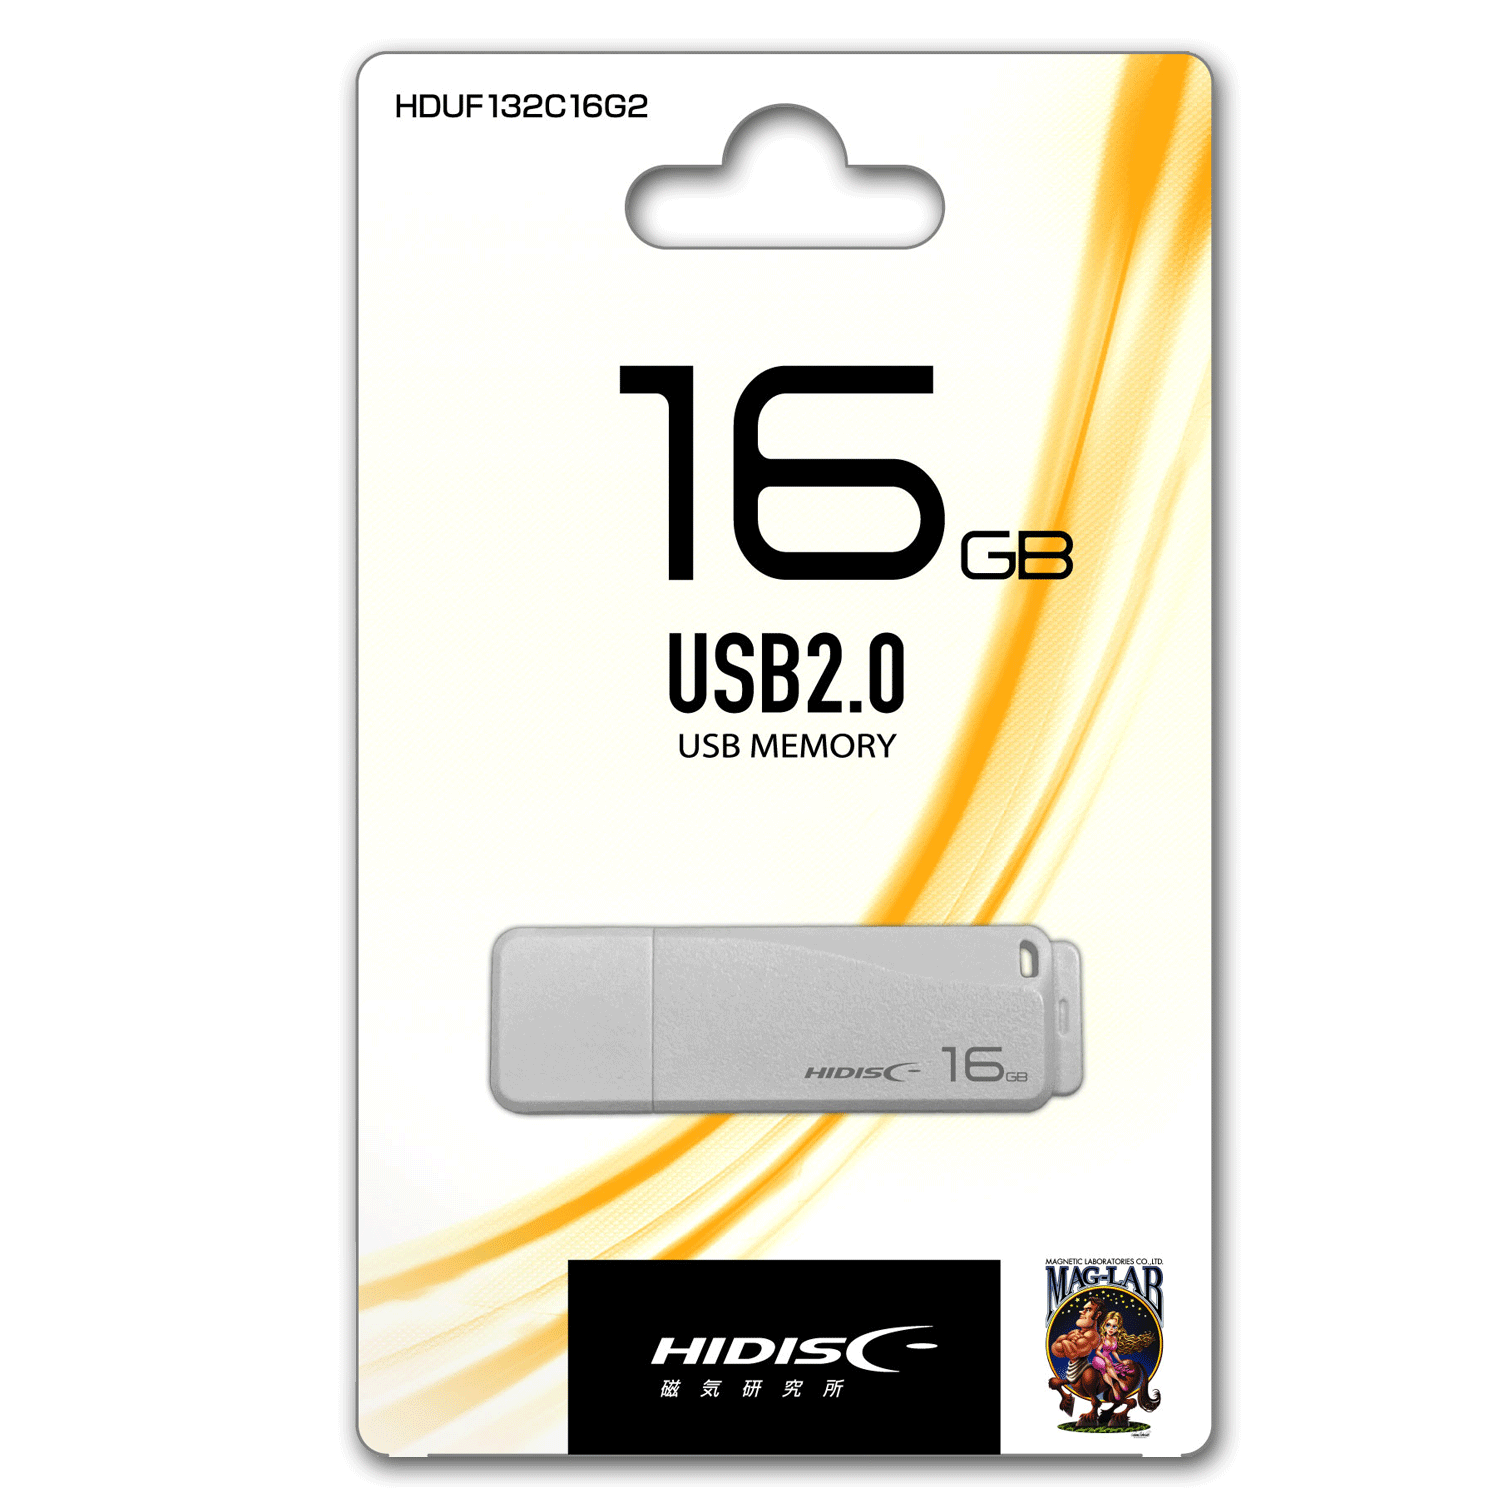 HIDISC USB 2.0 フラッシュドライブ 16GB 白 キャップ式 HDUF132C16G2